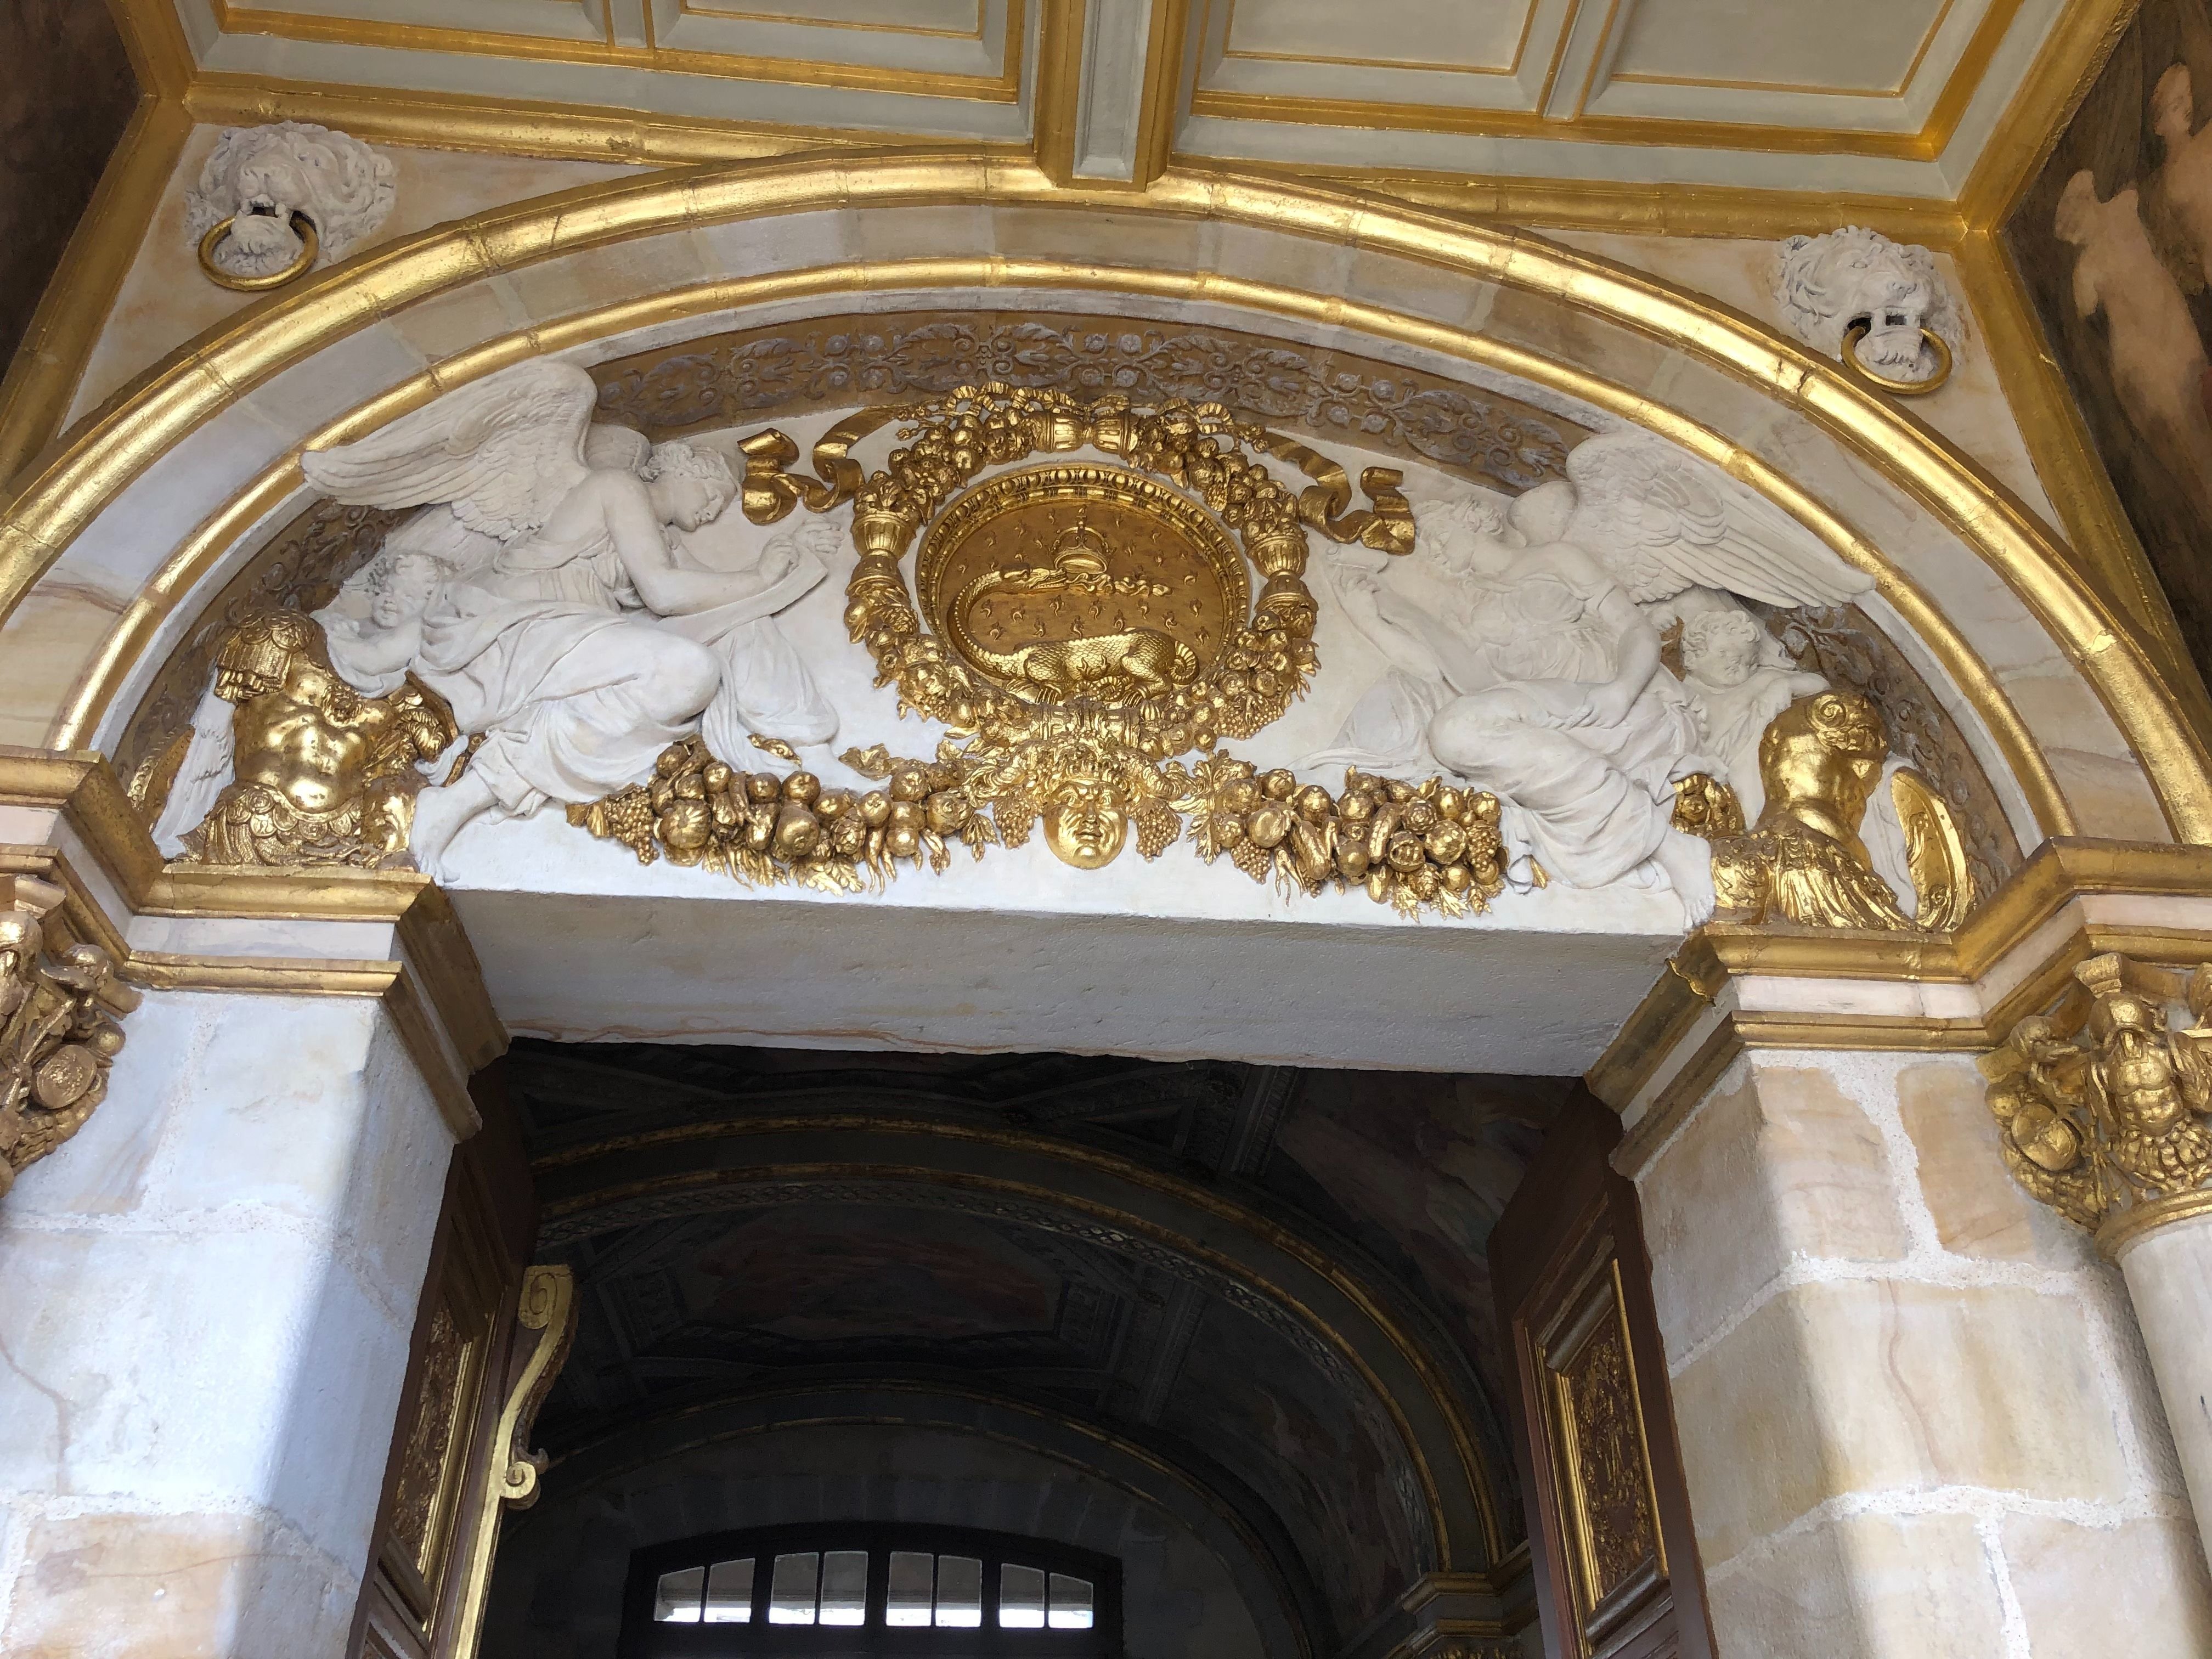 Fontainebleau, jeudi 11 avril 2024. La restauration de la Porte Dorée, monument  Renaissance, est terminée. Elle comporte une fresque du Primatice et ce tympan orné de stucs en partie dorée et d’une salamandre, animal emblématique de François Ier. LP/Alyssa Appino